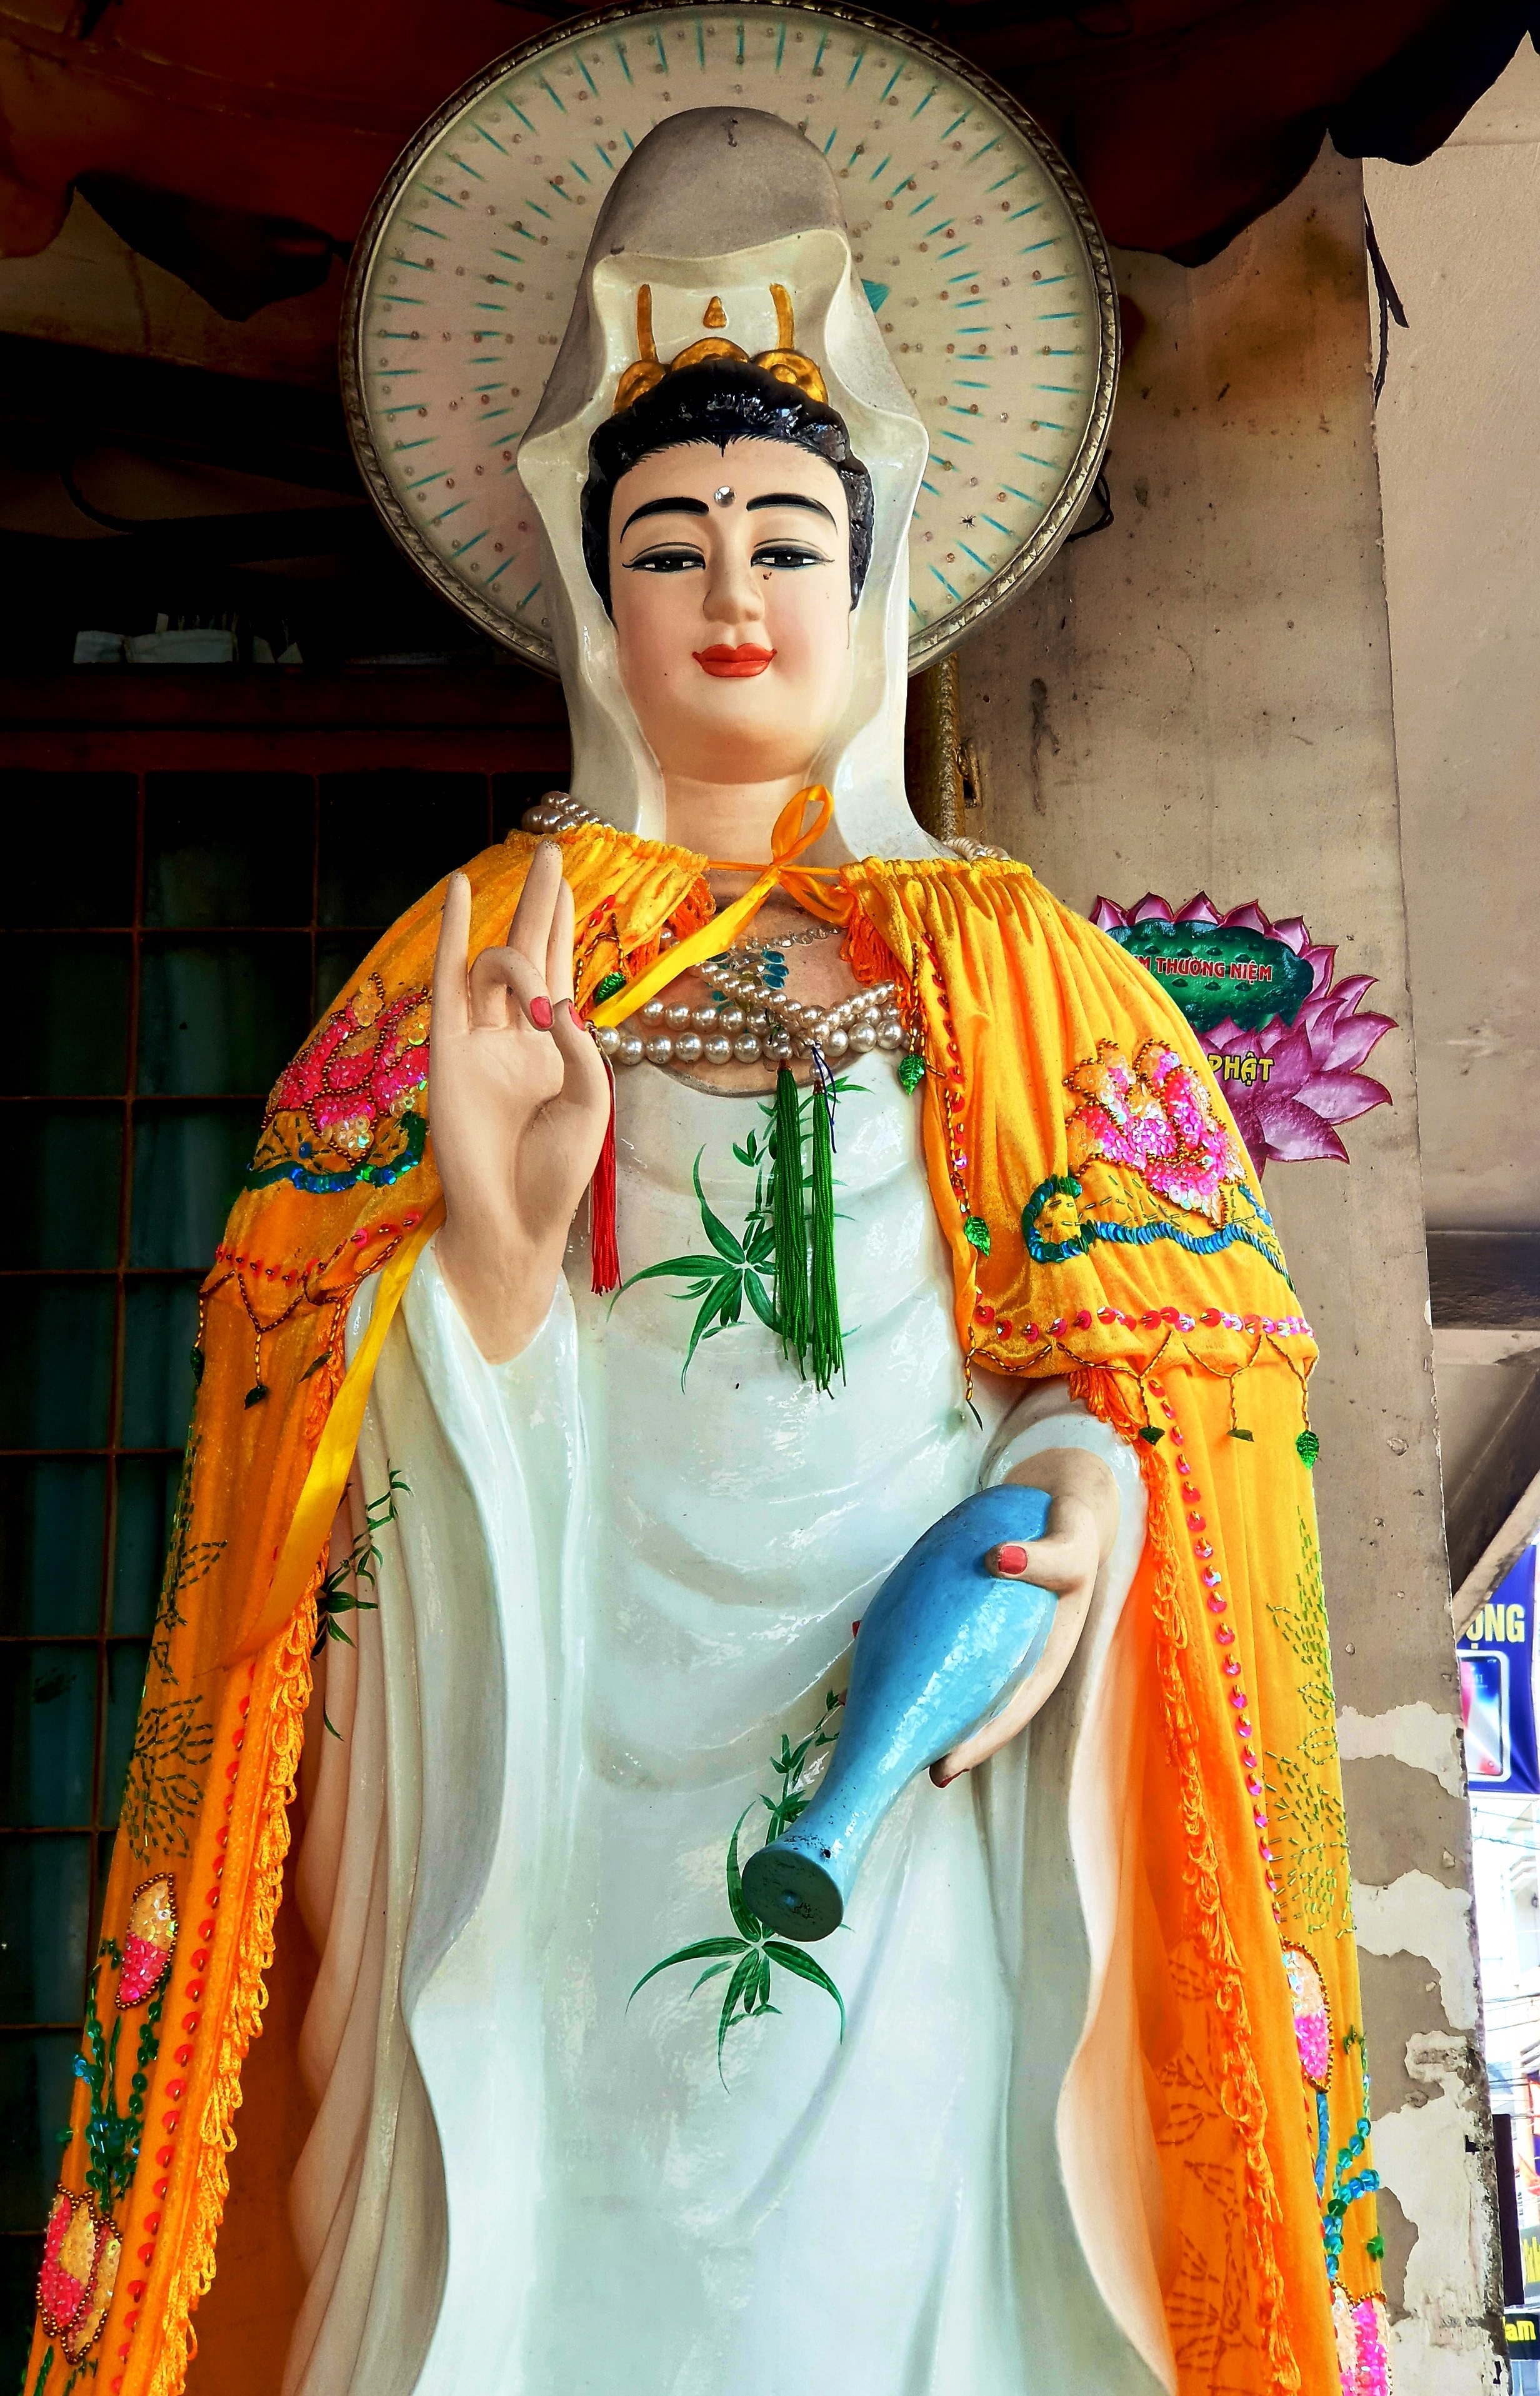 Chào mừng bạn đến với trang Wikipedia tiếng Việt về Quan Âm - Nữ thần đại bi giải thoát khổ đau, chăm sóc cho con người và xóa bỏ nạn buôn bán nô lệ. Hình ảnh sắc nét và mô tả chi tiết về Quan Âm sẽ giúp bạn hiểu rõ hơn về tôn giáo và văn hóa của người Việt Nam.